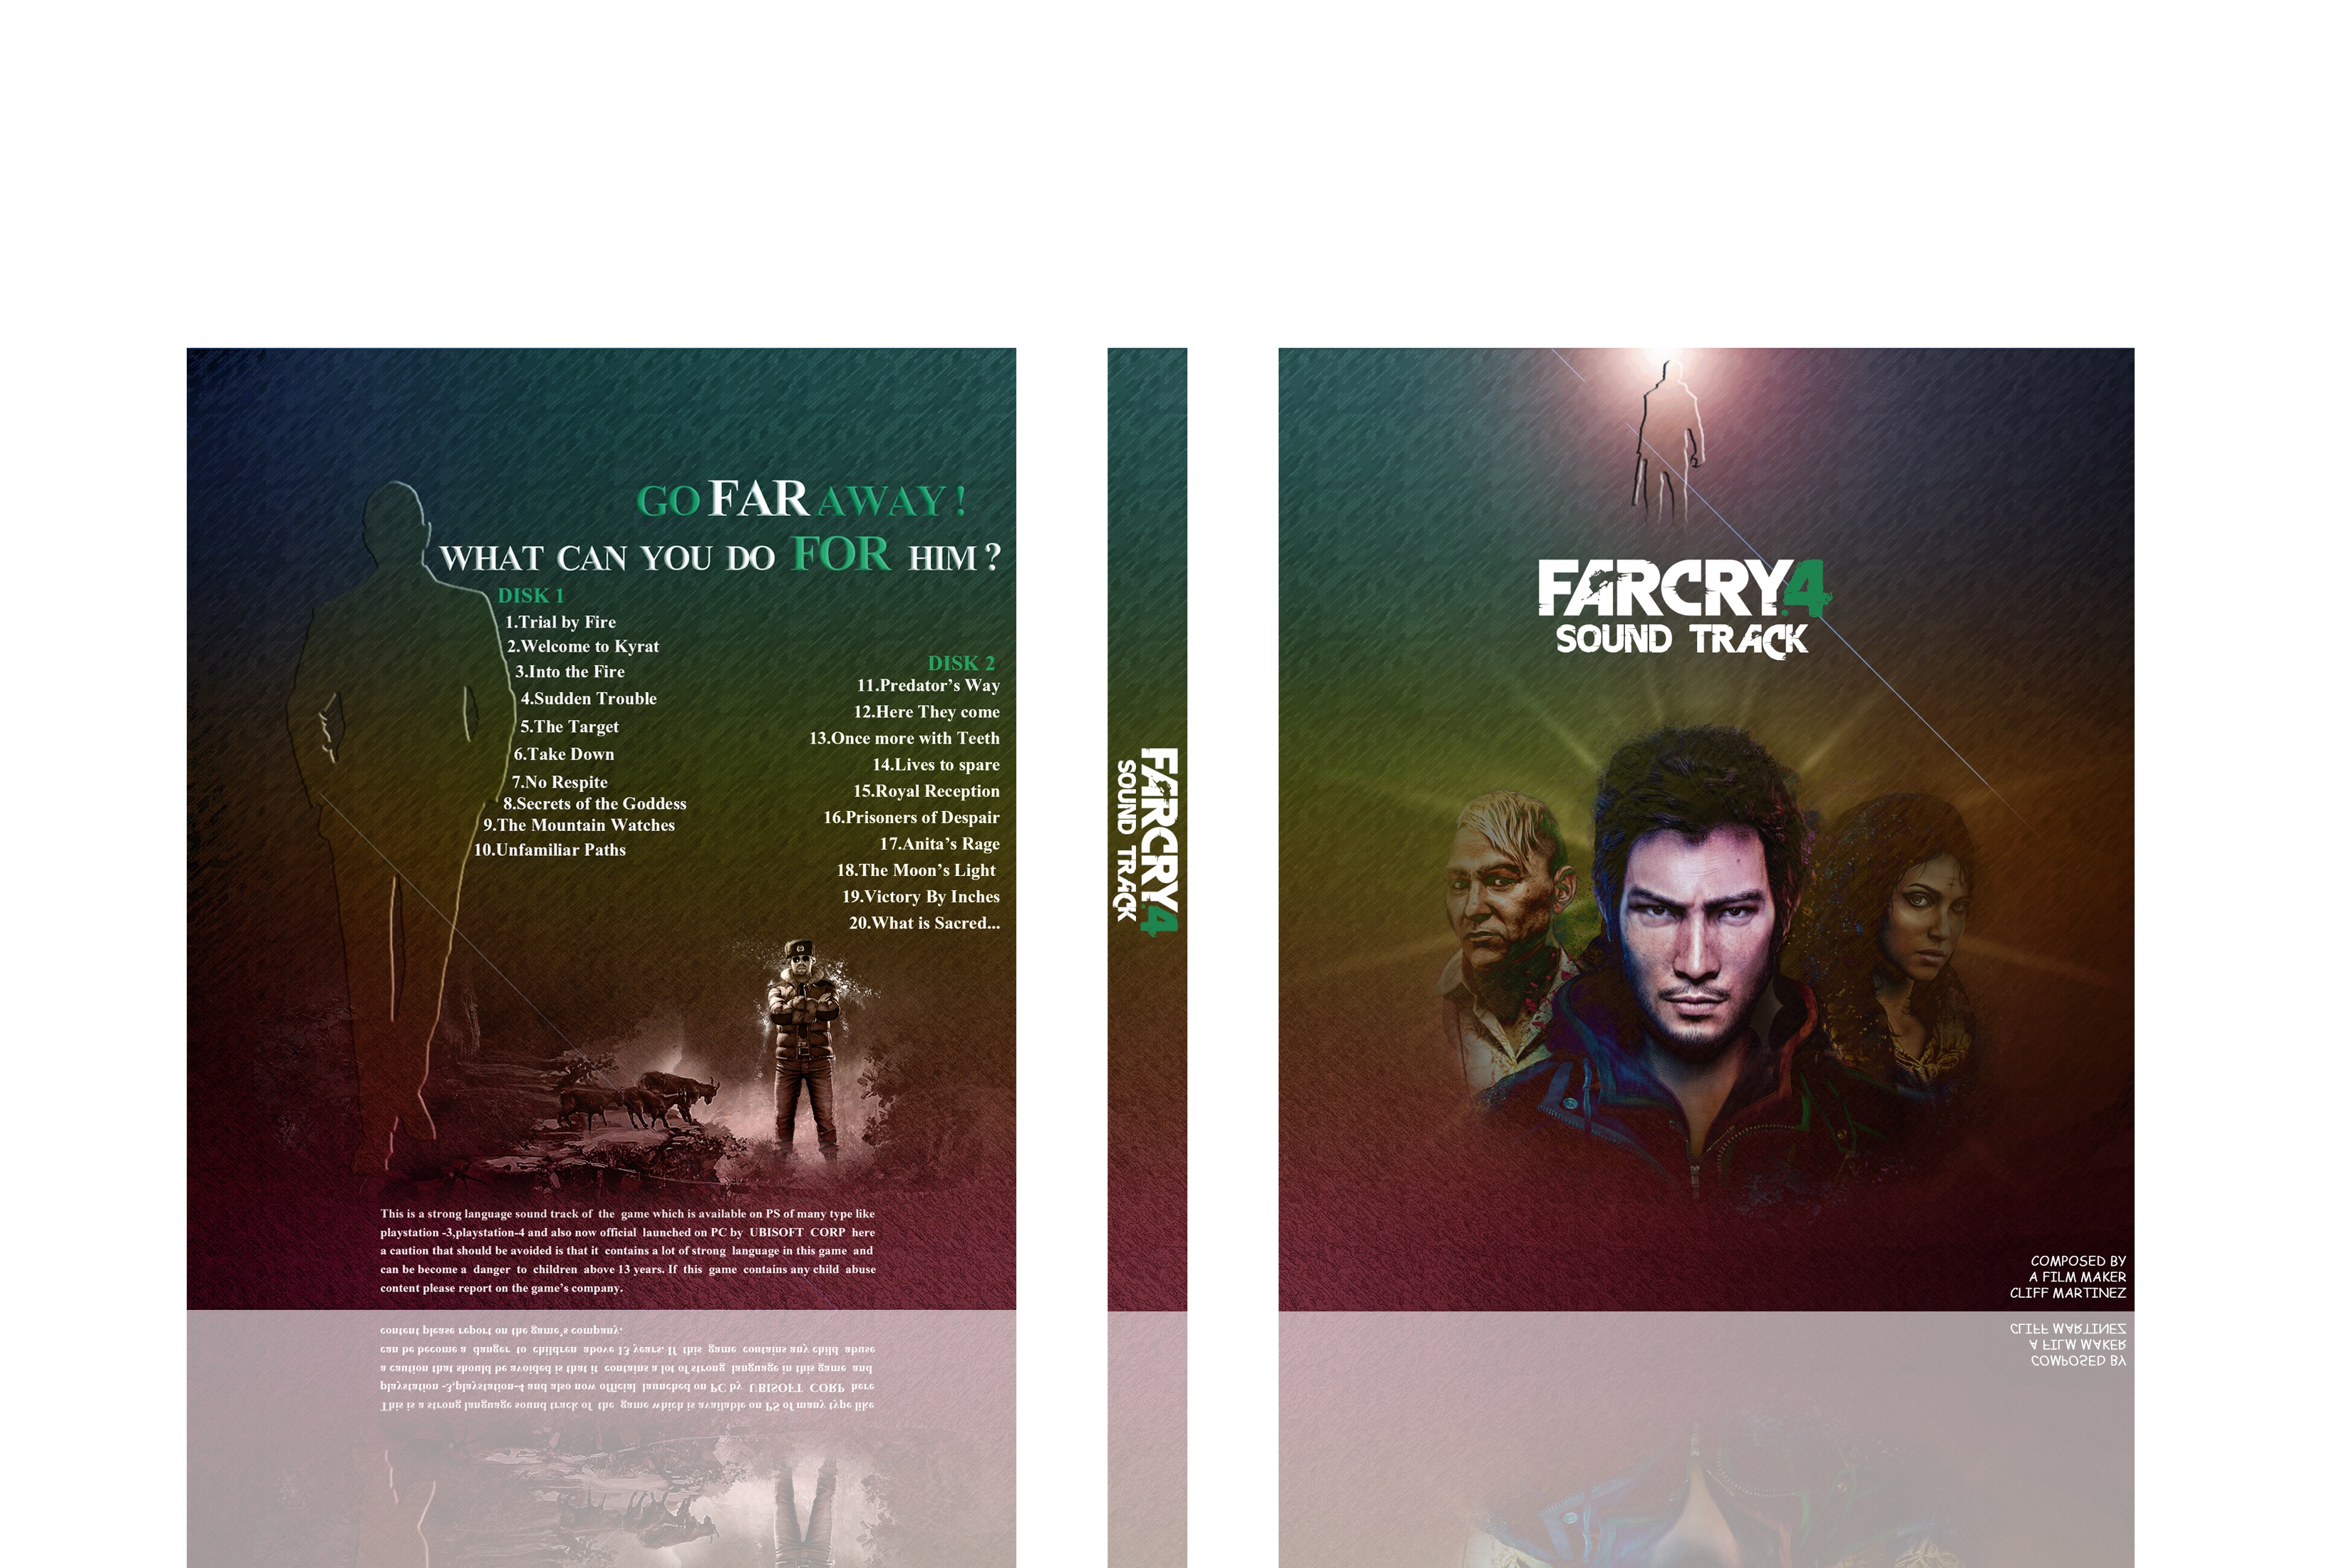 Far Cry 4 Soundtrack box cover